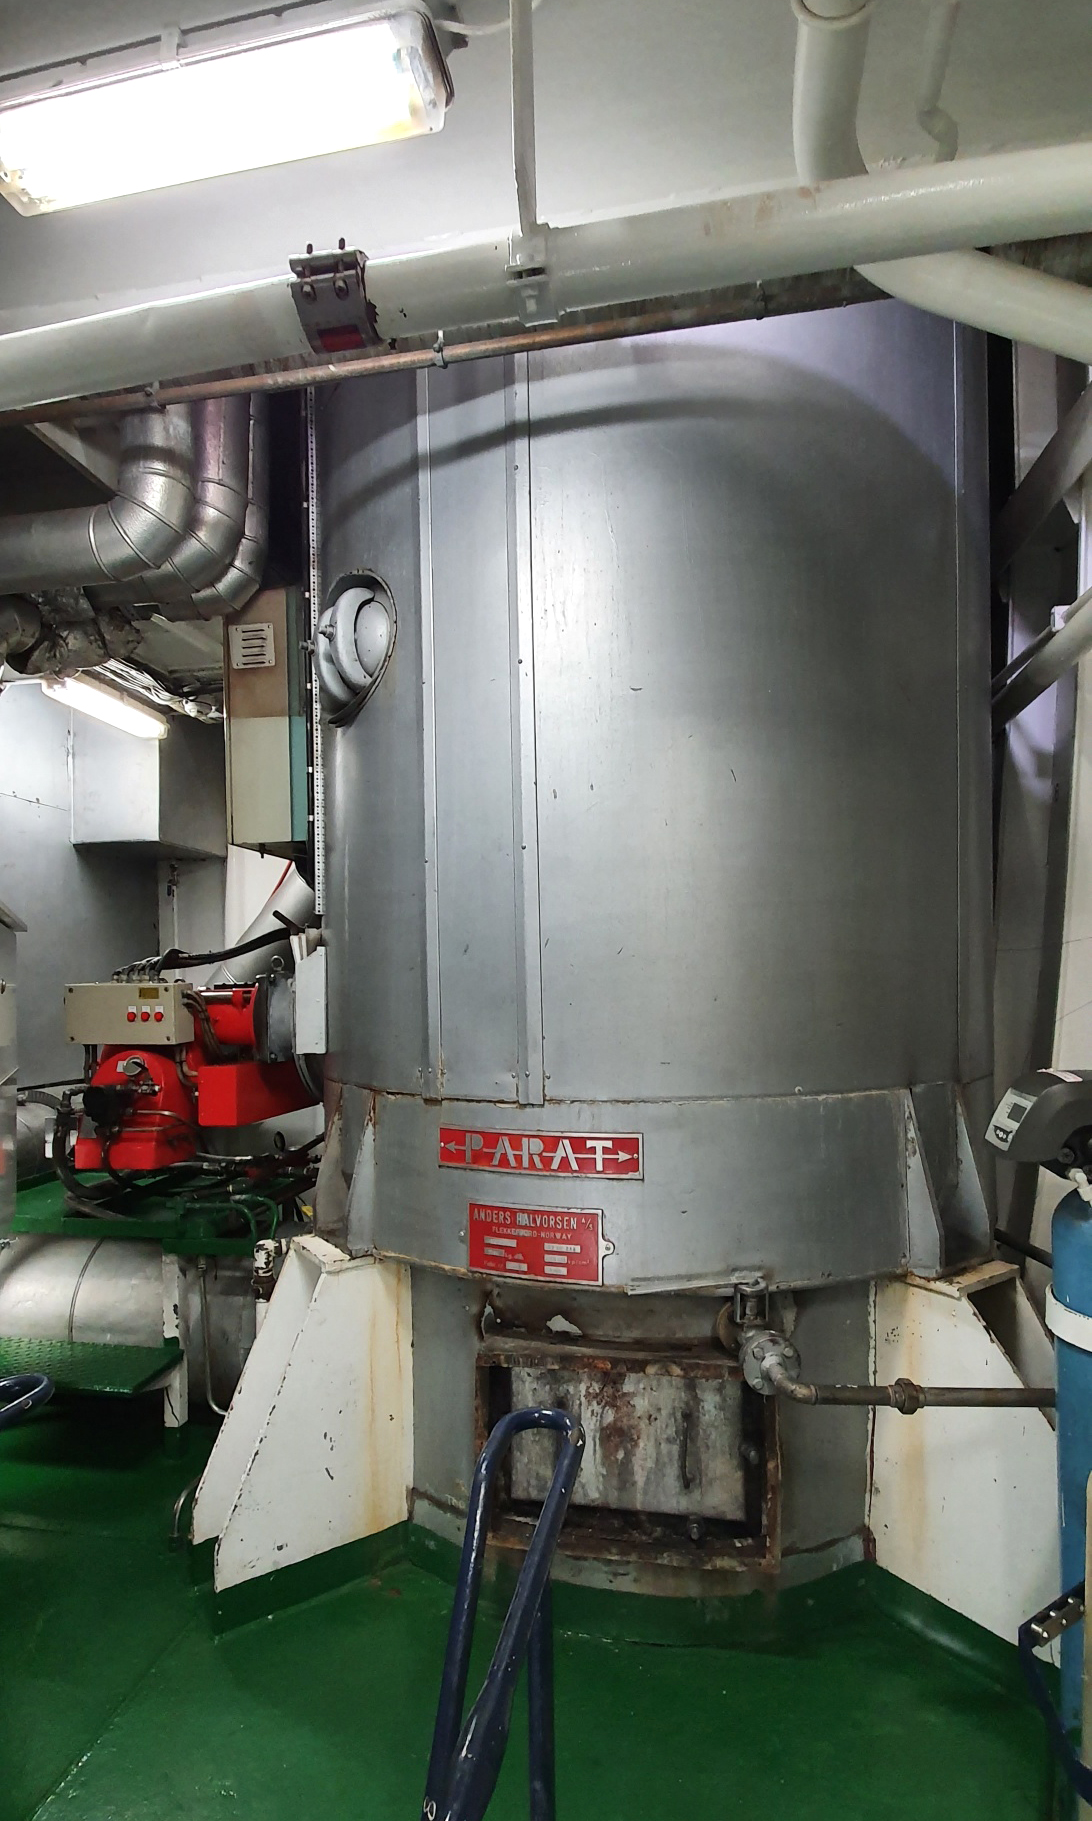 PARAT Halvorsen to deliver second Retrofit Steam Boiler to Sanford, New Zealand